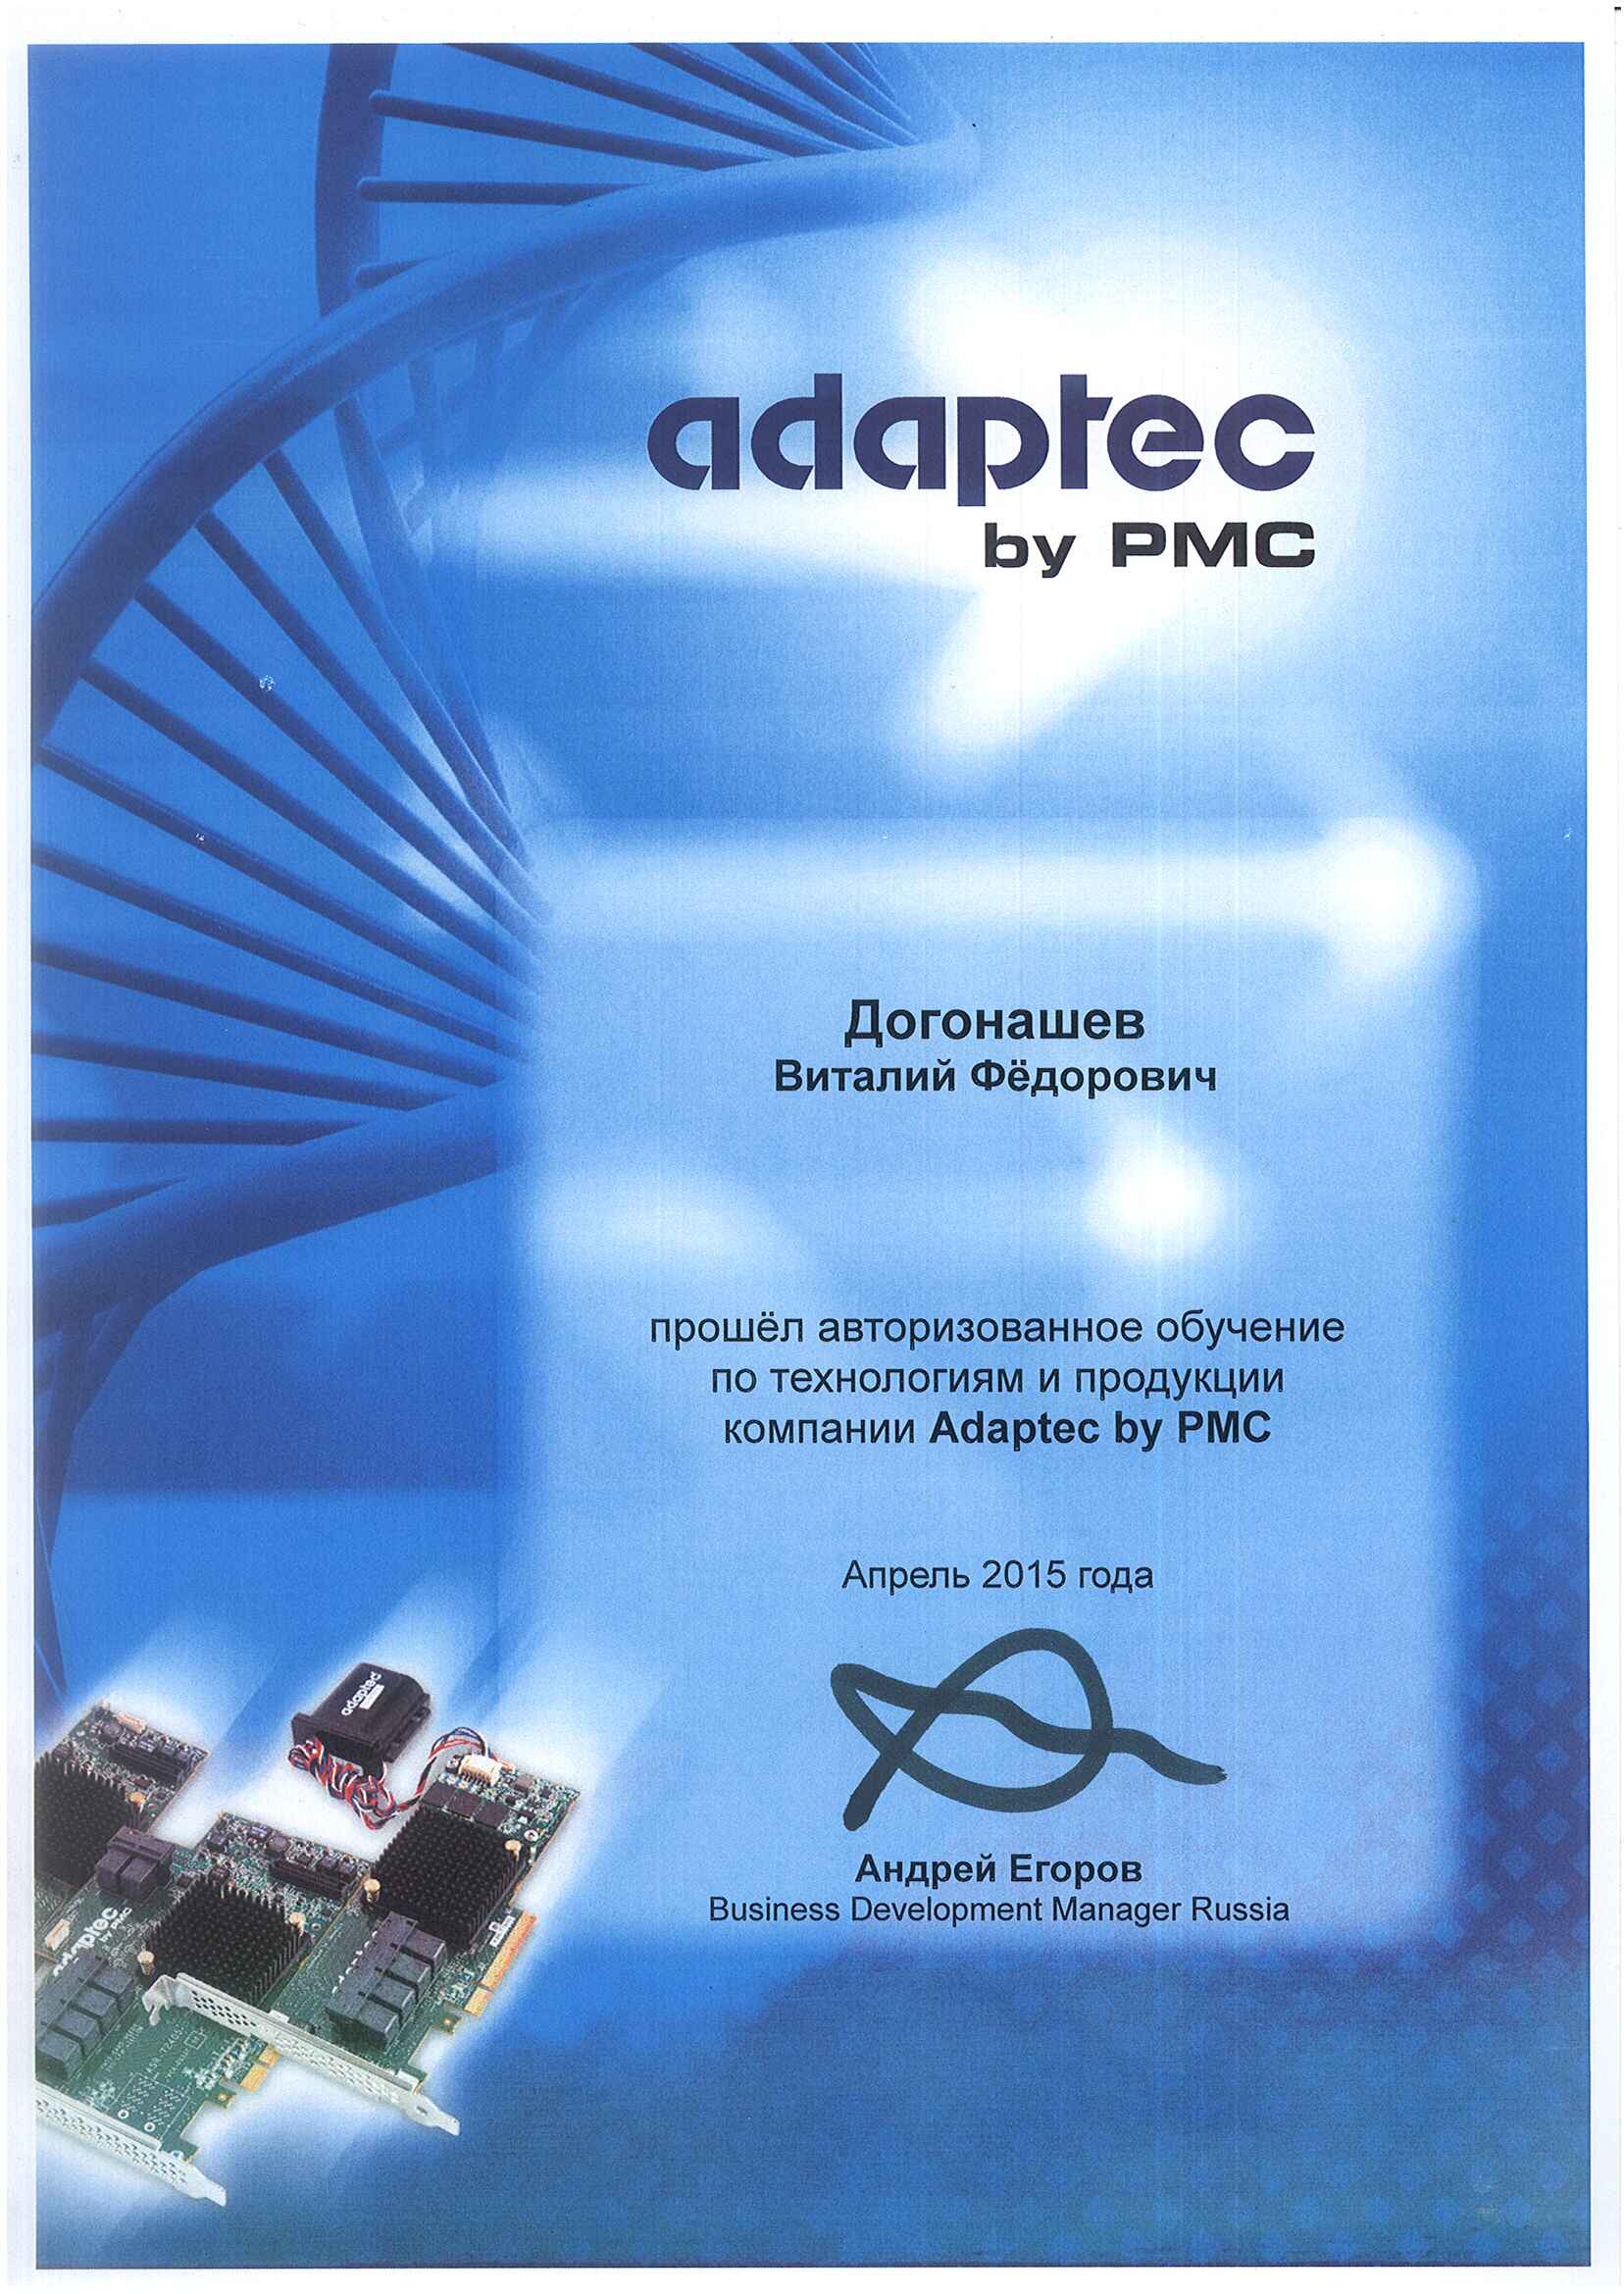 Сертификат Adaptec-Догонашев Виталий Федорович